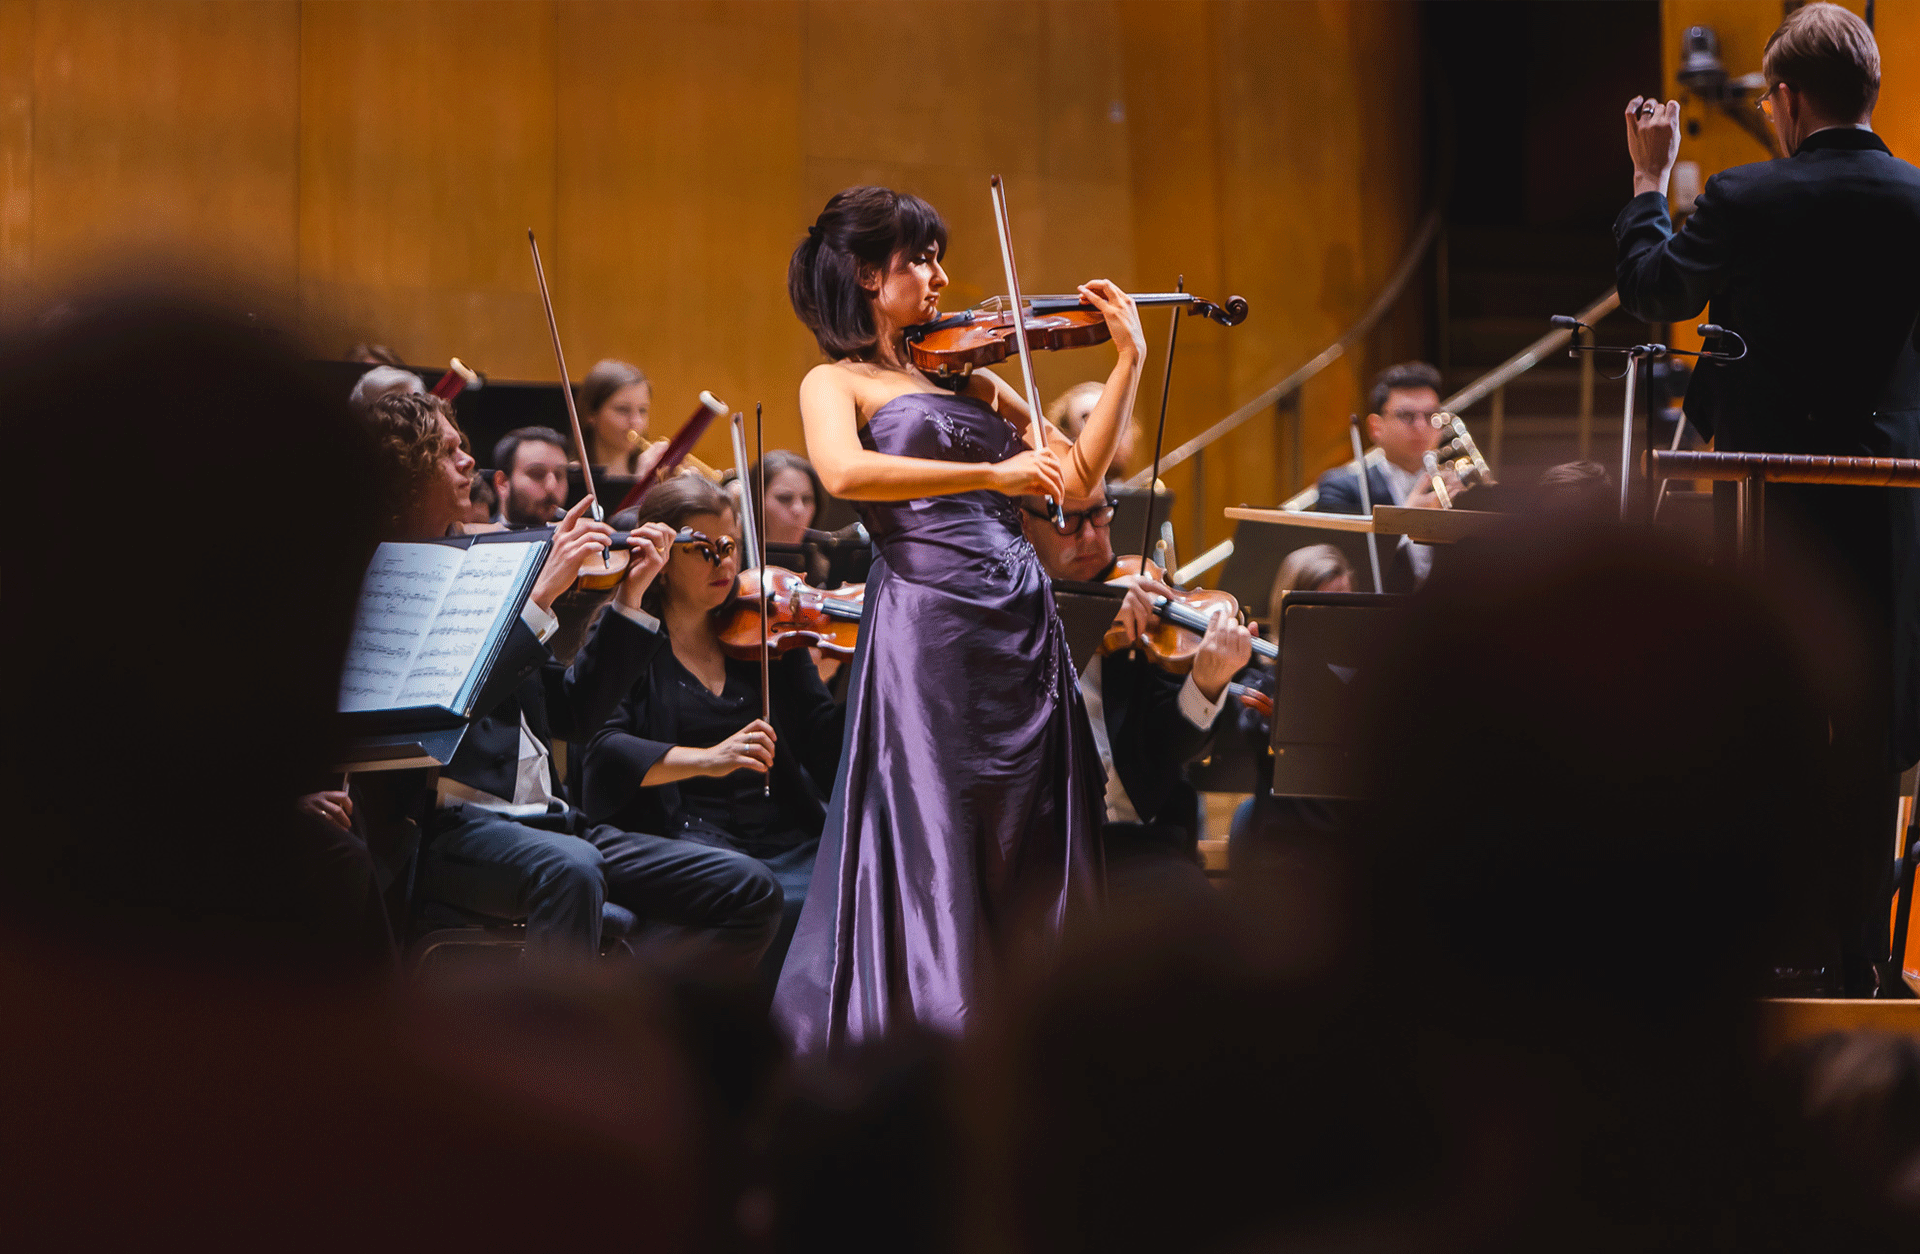 Violinist i lila klänning spelar inlevelsefullt framför orkestern.